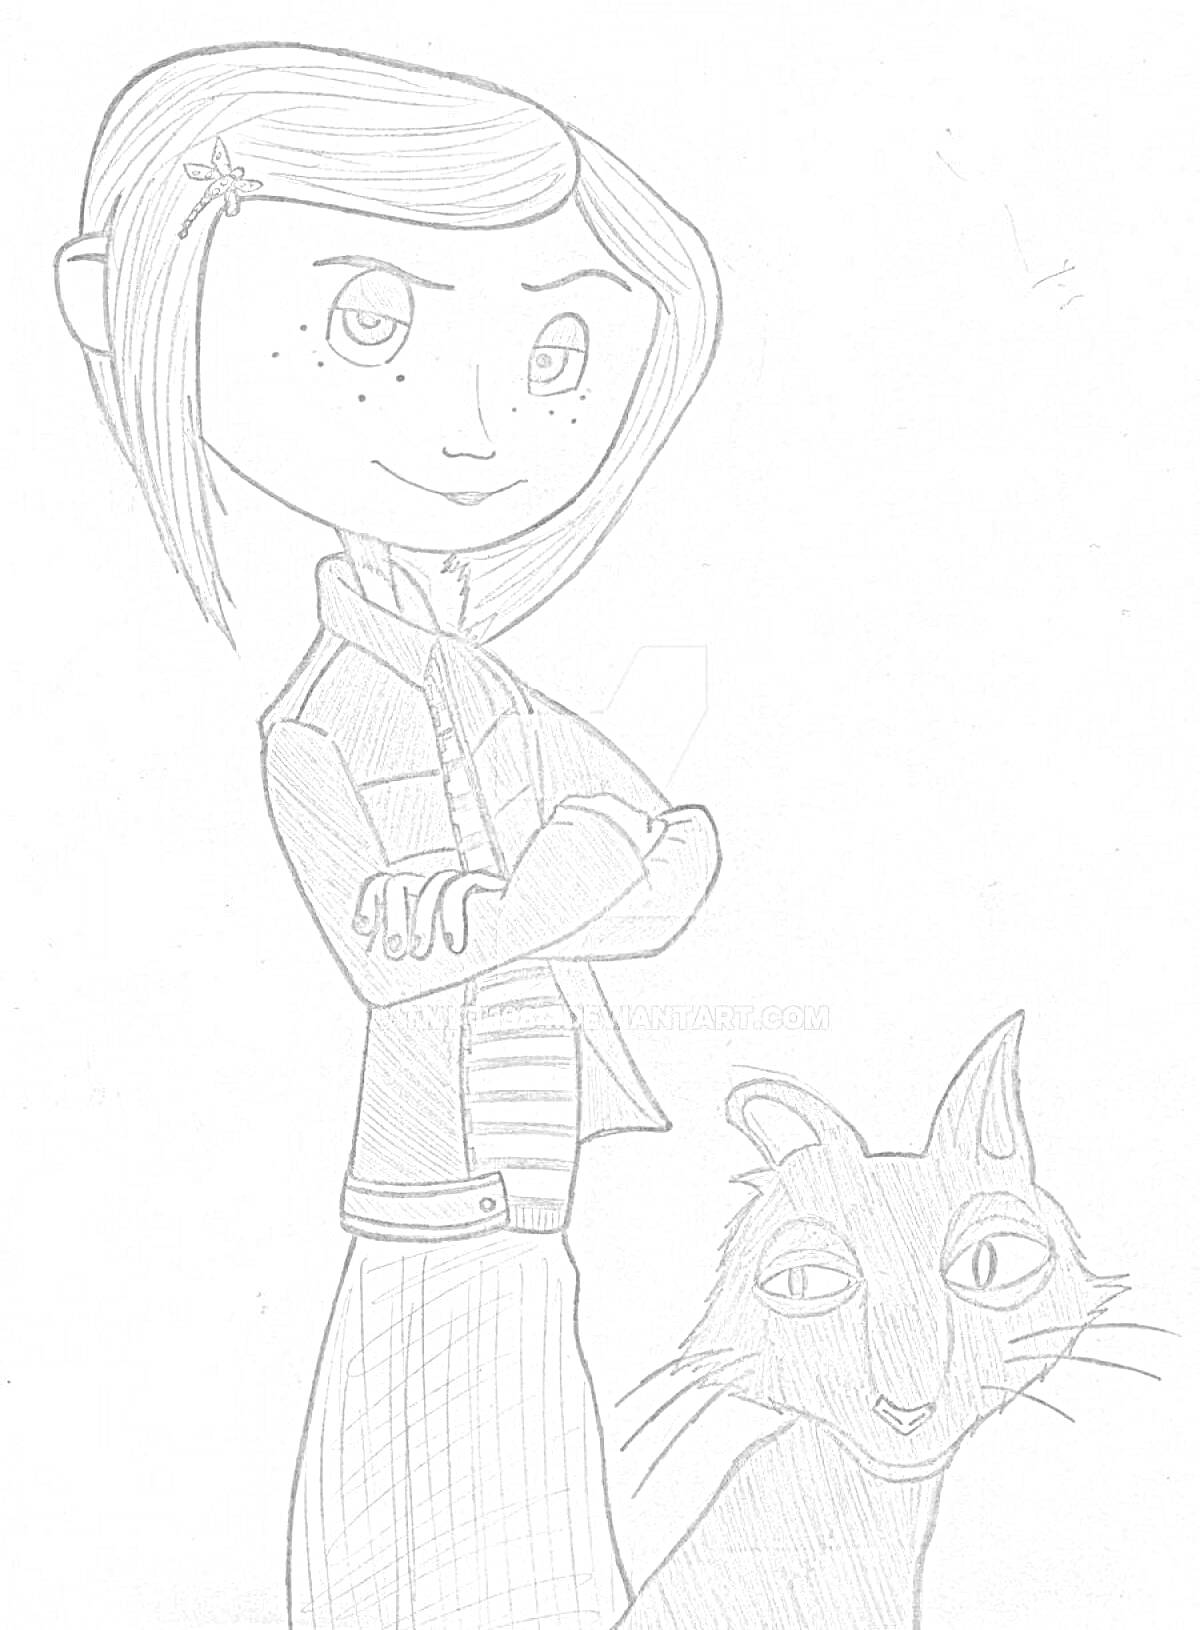 Раскраска Девочка с полосатой рубашкой и прической с заколкой, стоящая рядом с котом.